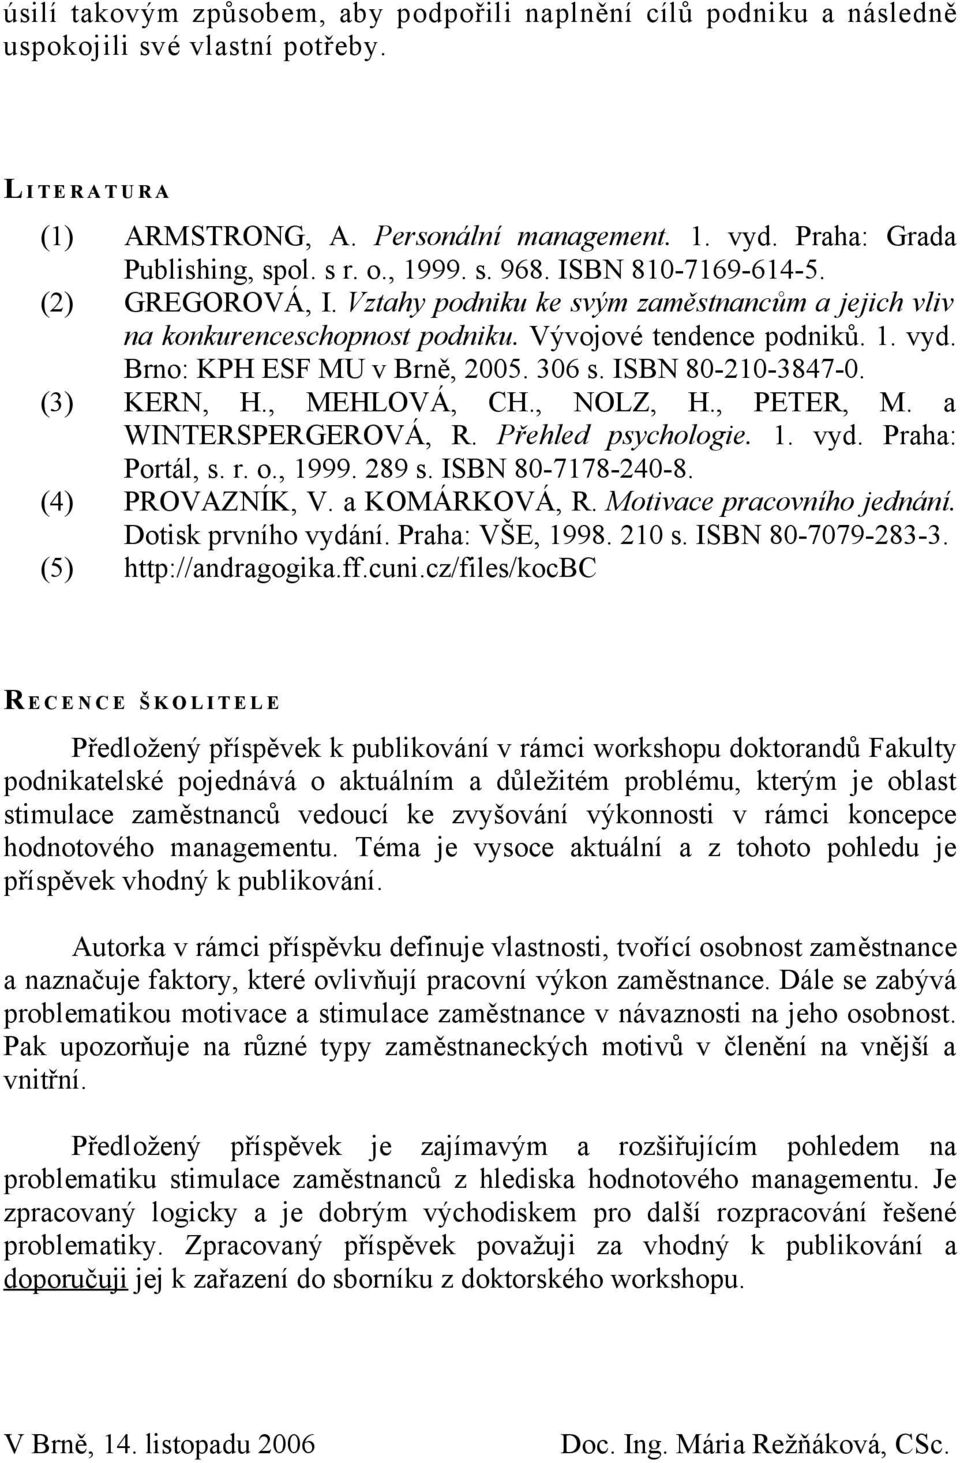 Vývojové tendence podniků. 1. vyd. Brno: KPH ESF MU v Brně, 2005. 306 s. ISBN 80-210-3847-0. (3) KERN, H., MEHLOVÁ, CH., NOLZ, H., PETER, M. a WINTERSPERGEROVÁ, R. Přehled psychologie. 1. vyd. Praha: Portál, s.